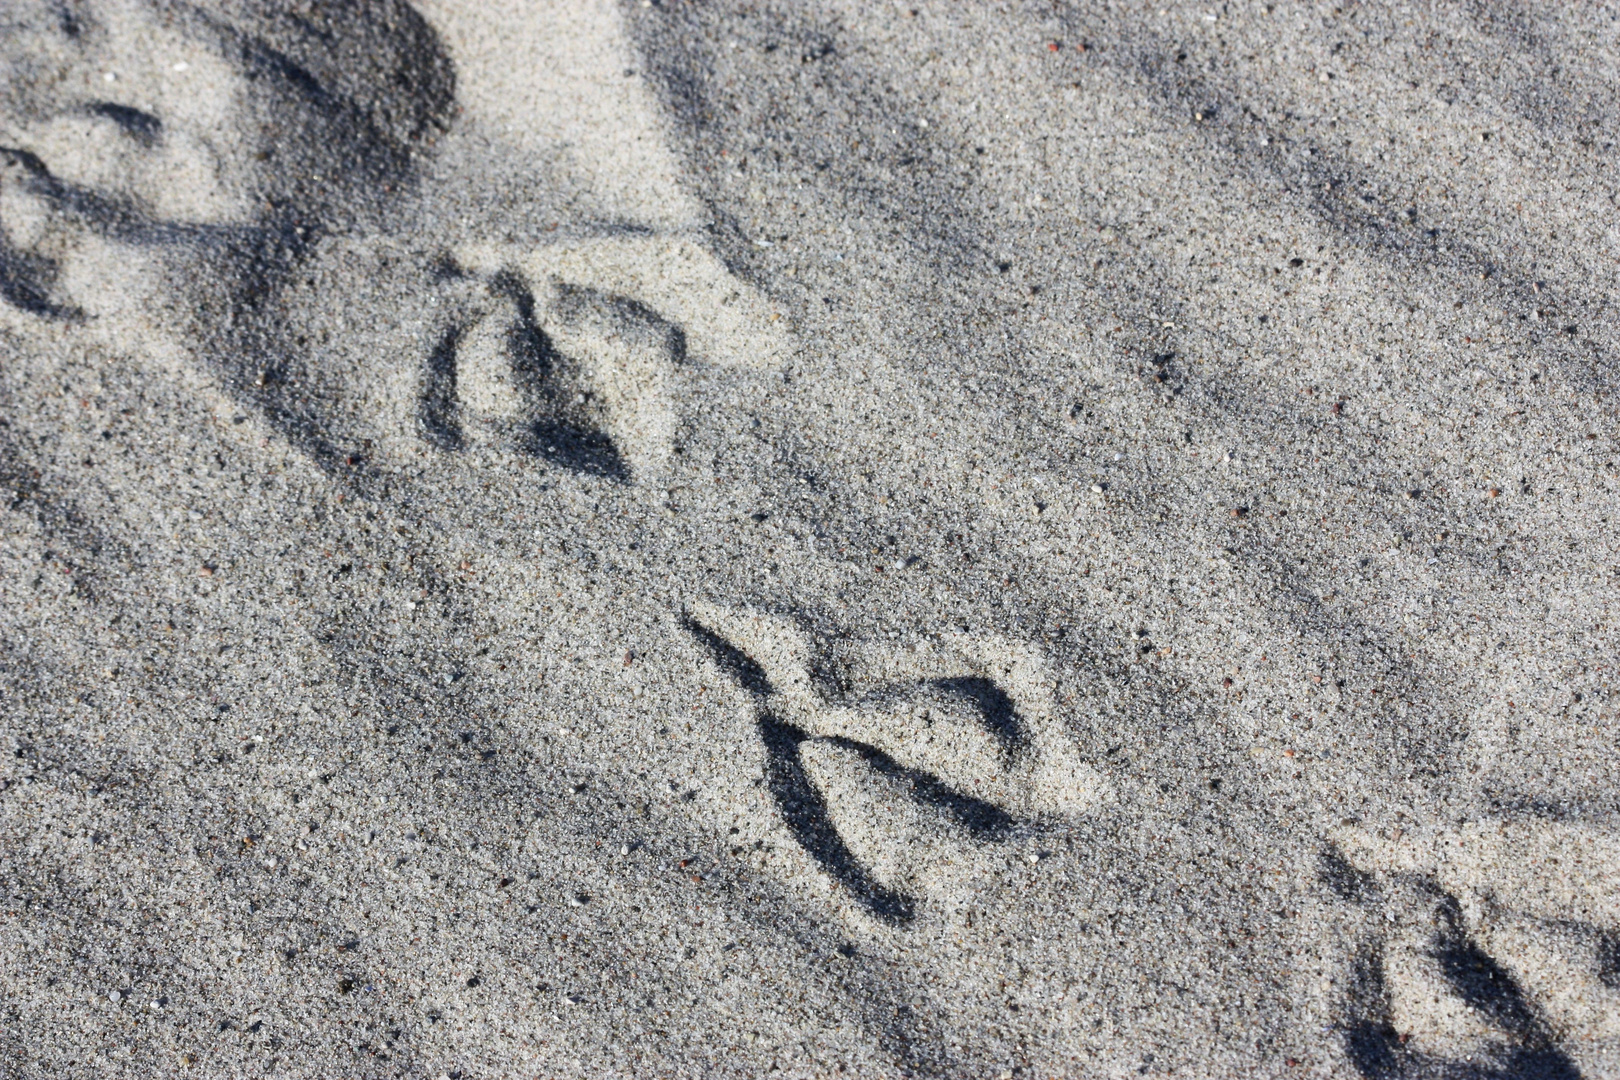 Spuren im Sand...